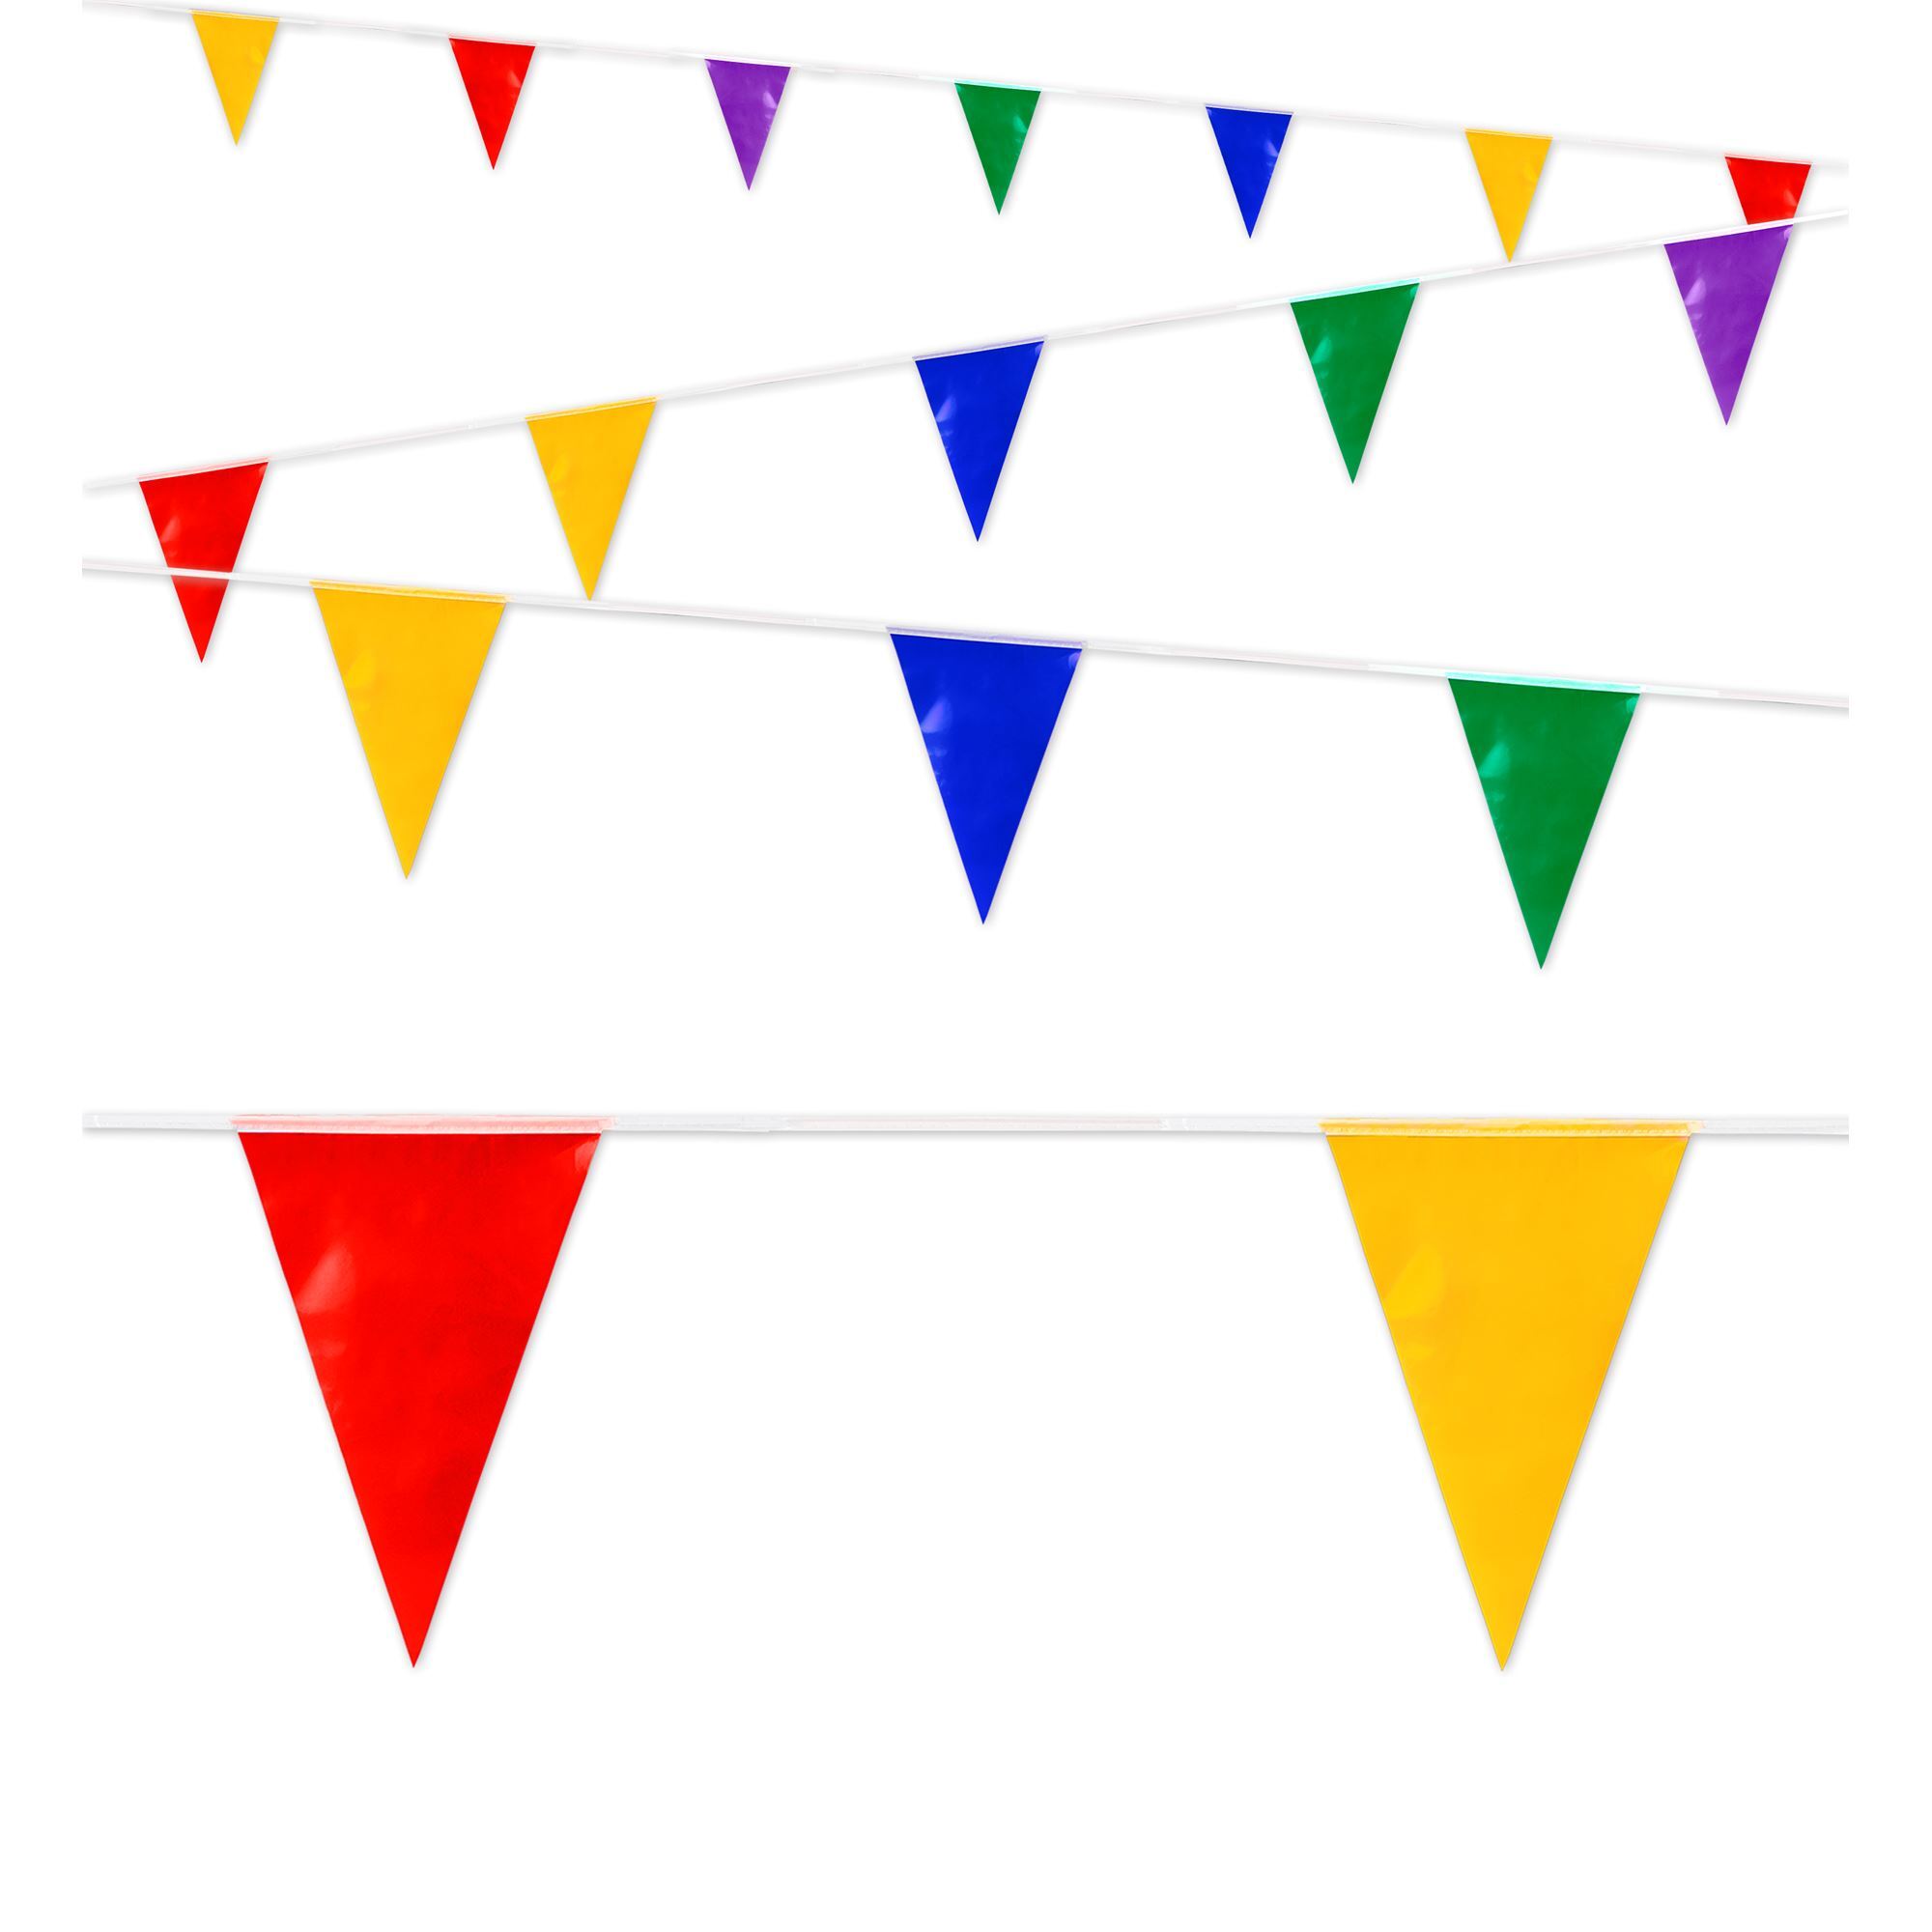 Vrolijke kleurrijke vlaggenlijn 10 meter met allerlei kleuren